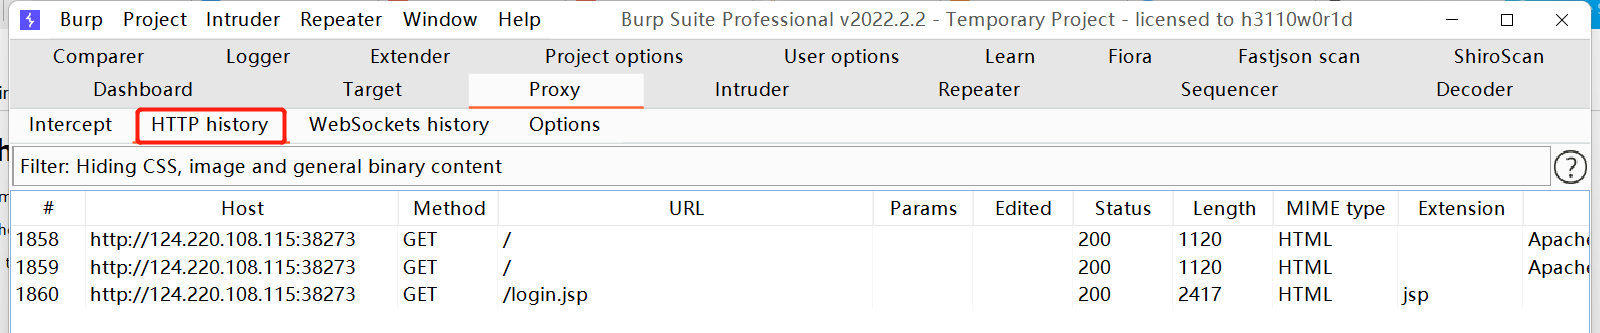 漏洞发现-BurpSuite插件-Fiora+Fastjson+Shiro_Burp漏洞扫描插件_19